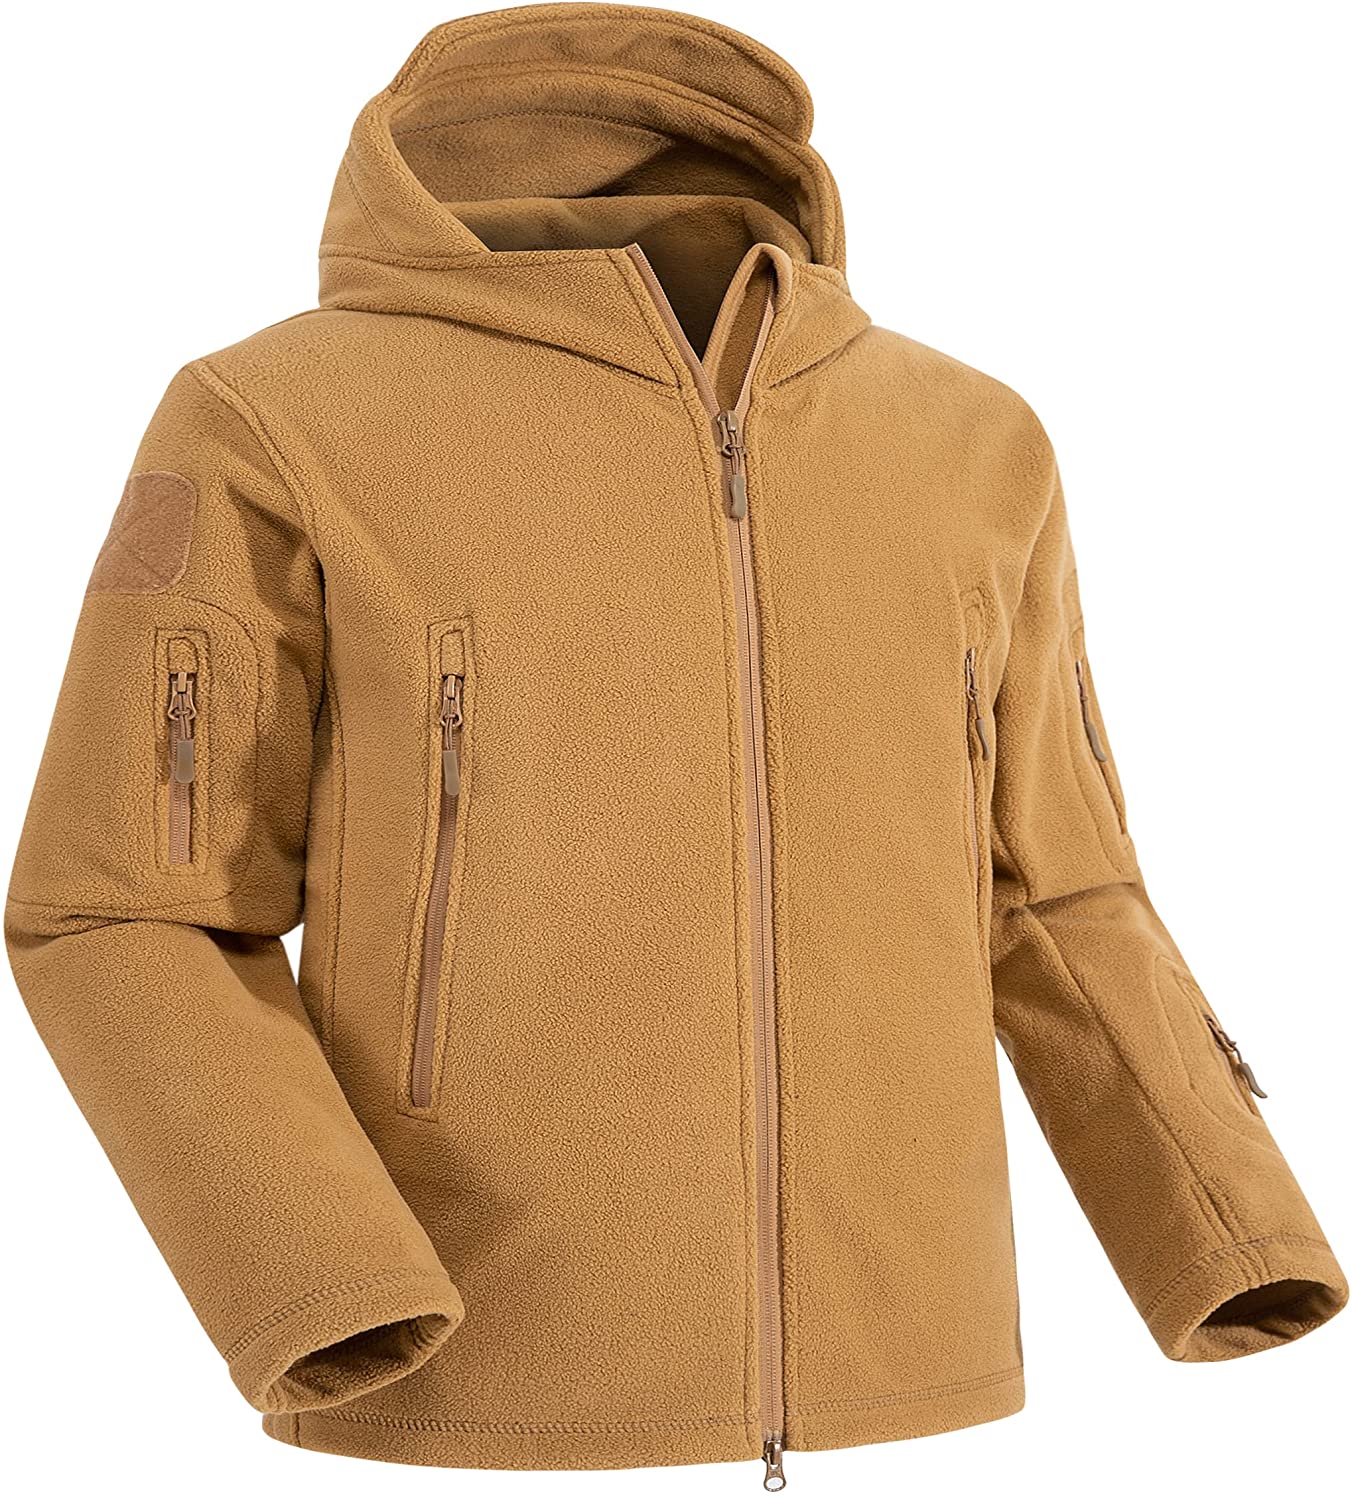 CHEXPEL Men's Fleece Military Tactical Jacket Winter Snow Hooded Warm Outdoor Sport Adventure Coats